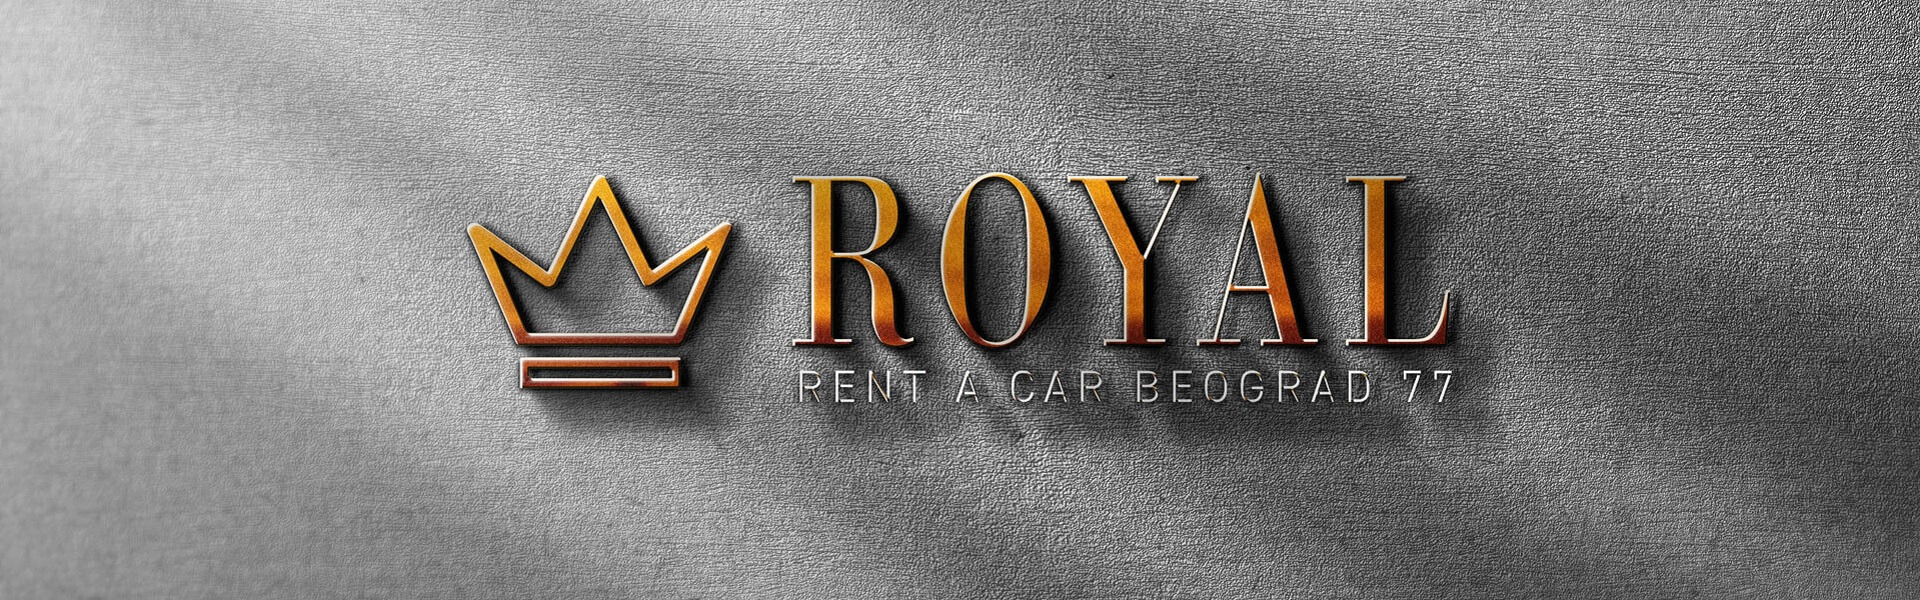 Rent a car Beograd | Car rental Beograd Royal